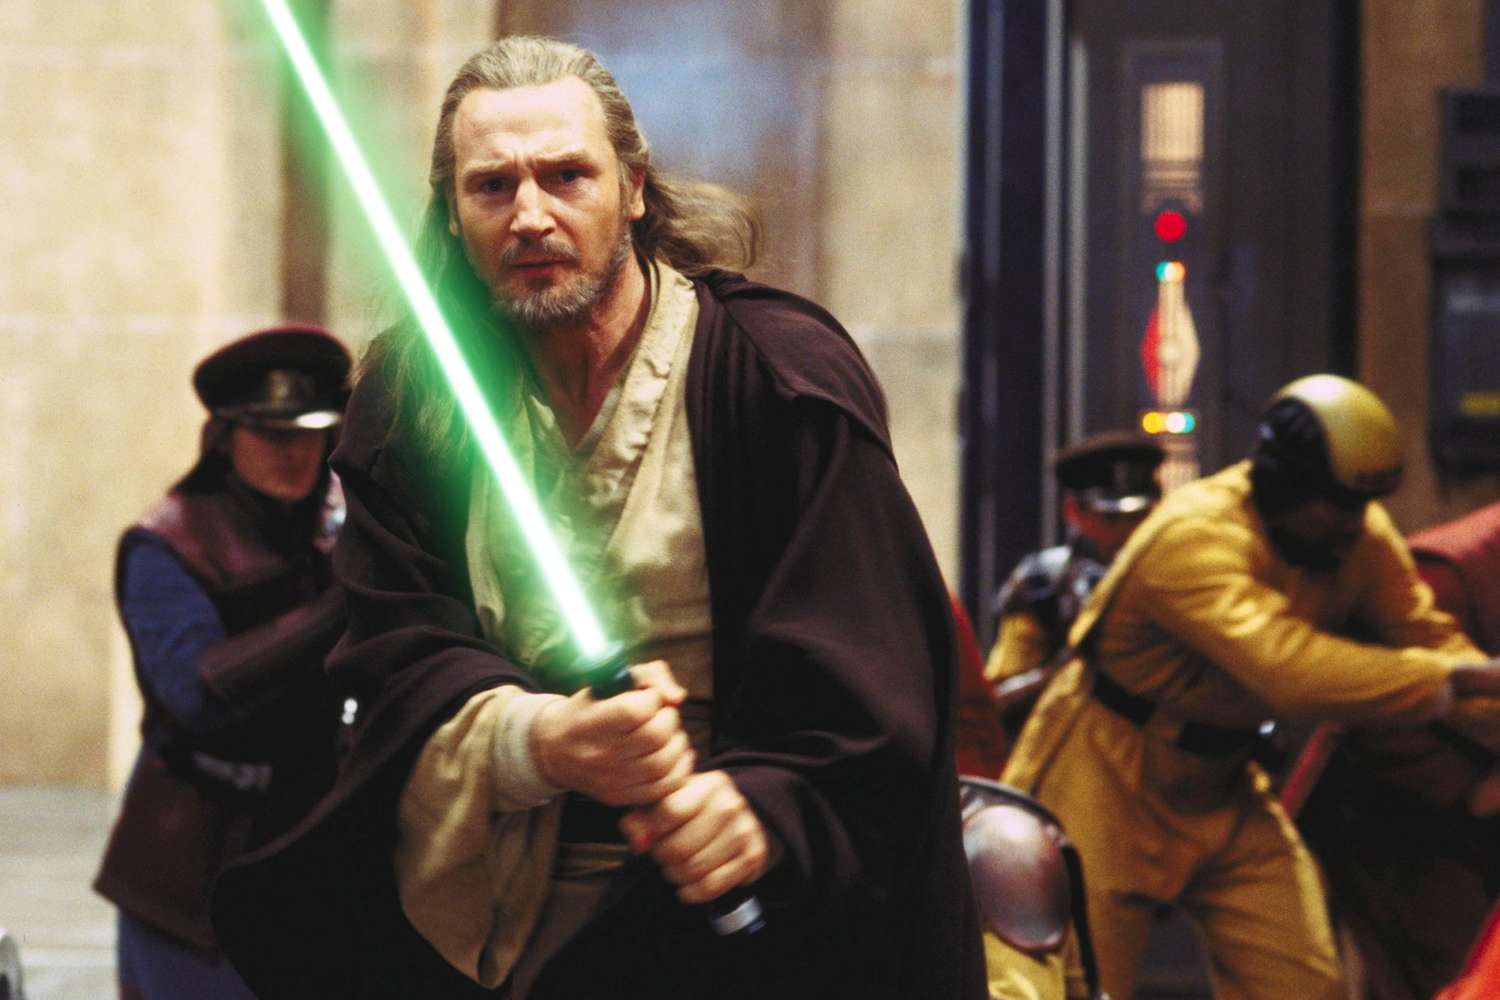 Liam Neeson กล่าวว่าเขาจะกลับไปที่ Star Wars แต่สงสัยว่าแฟรนไชส์จะ 'เริ่มเลือนหายไป'